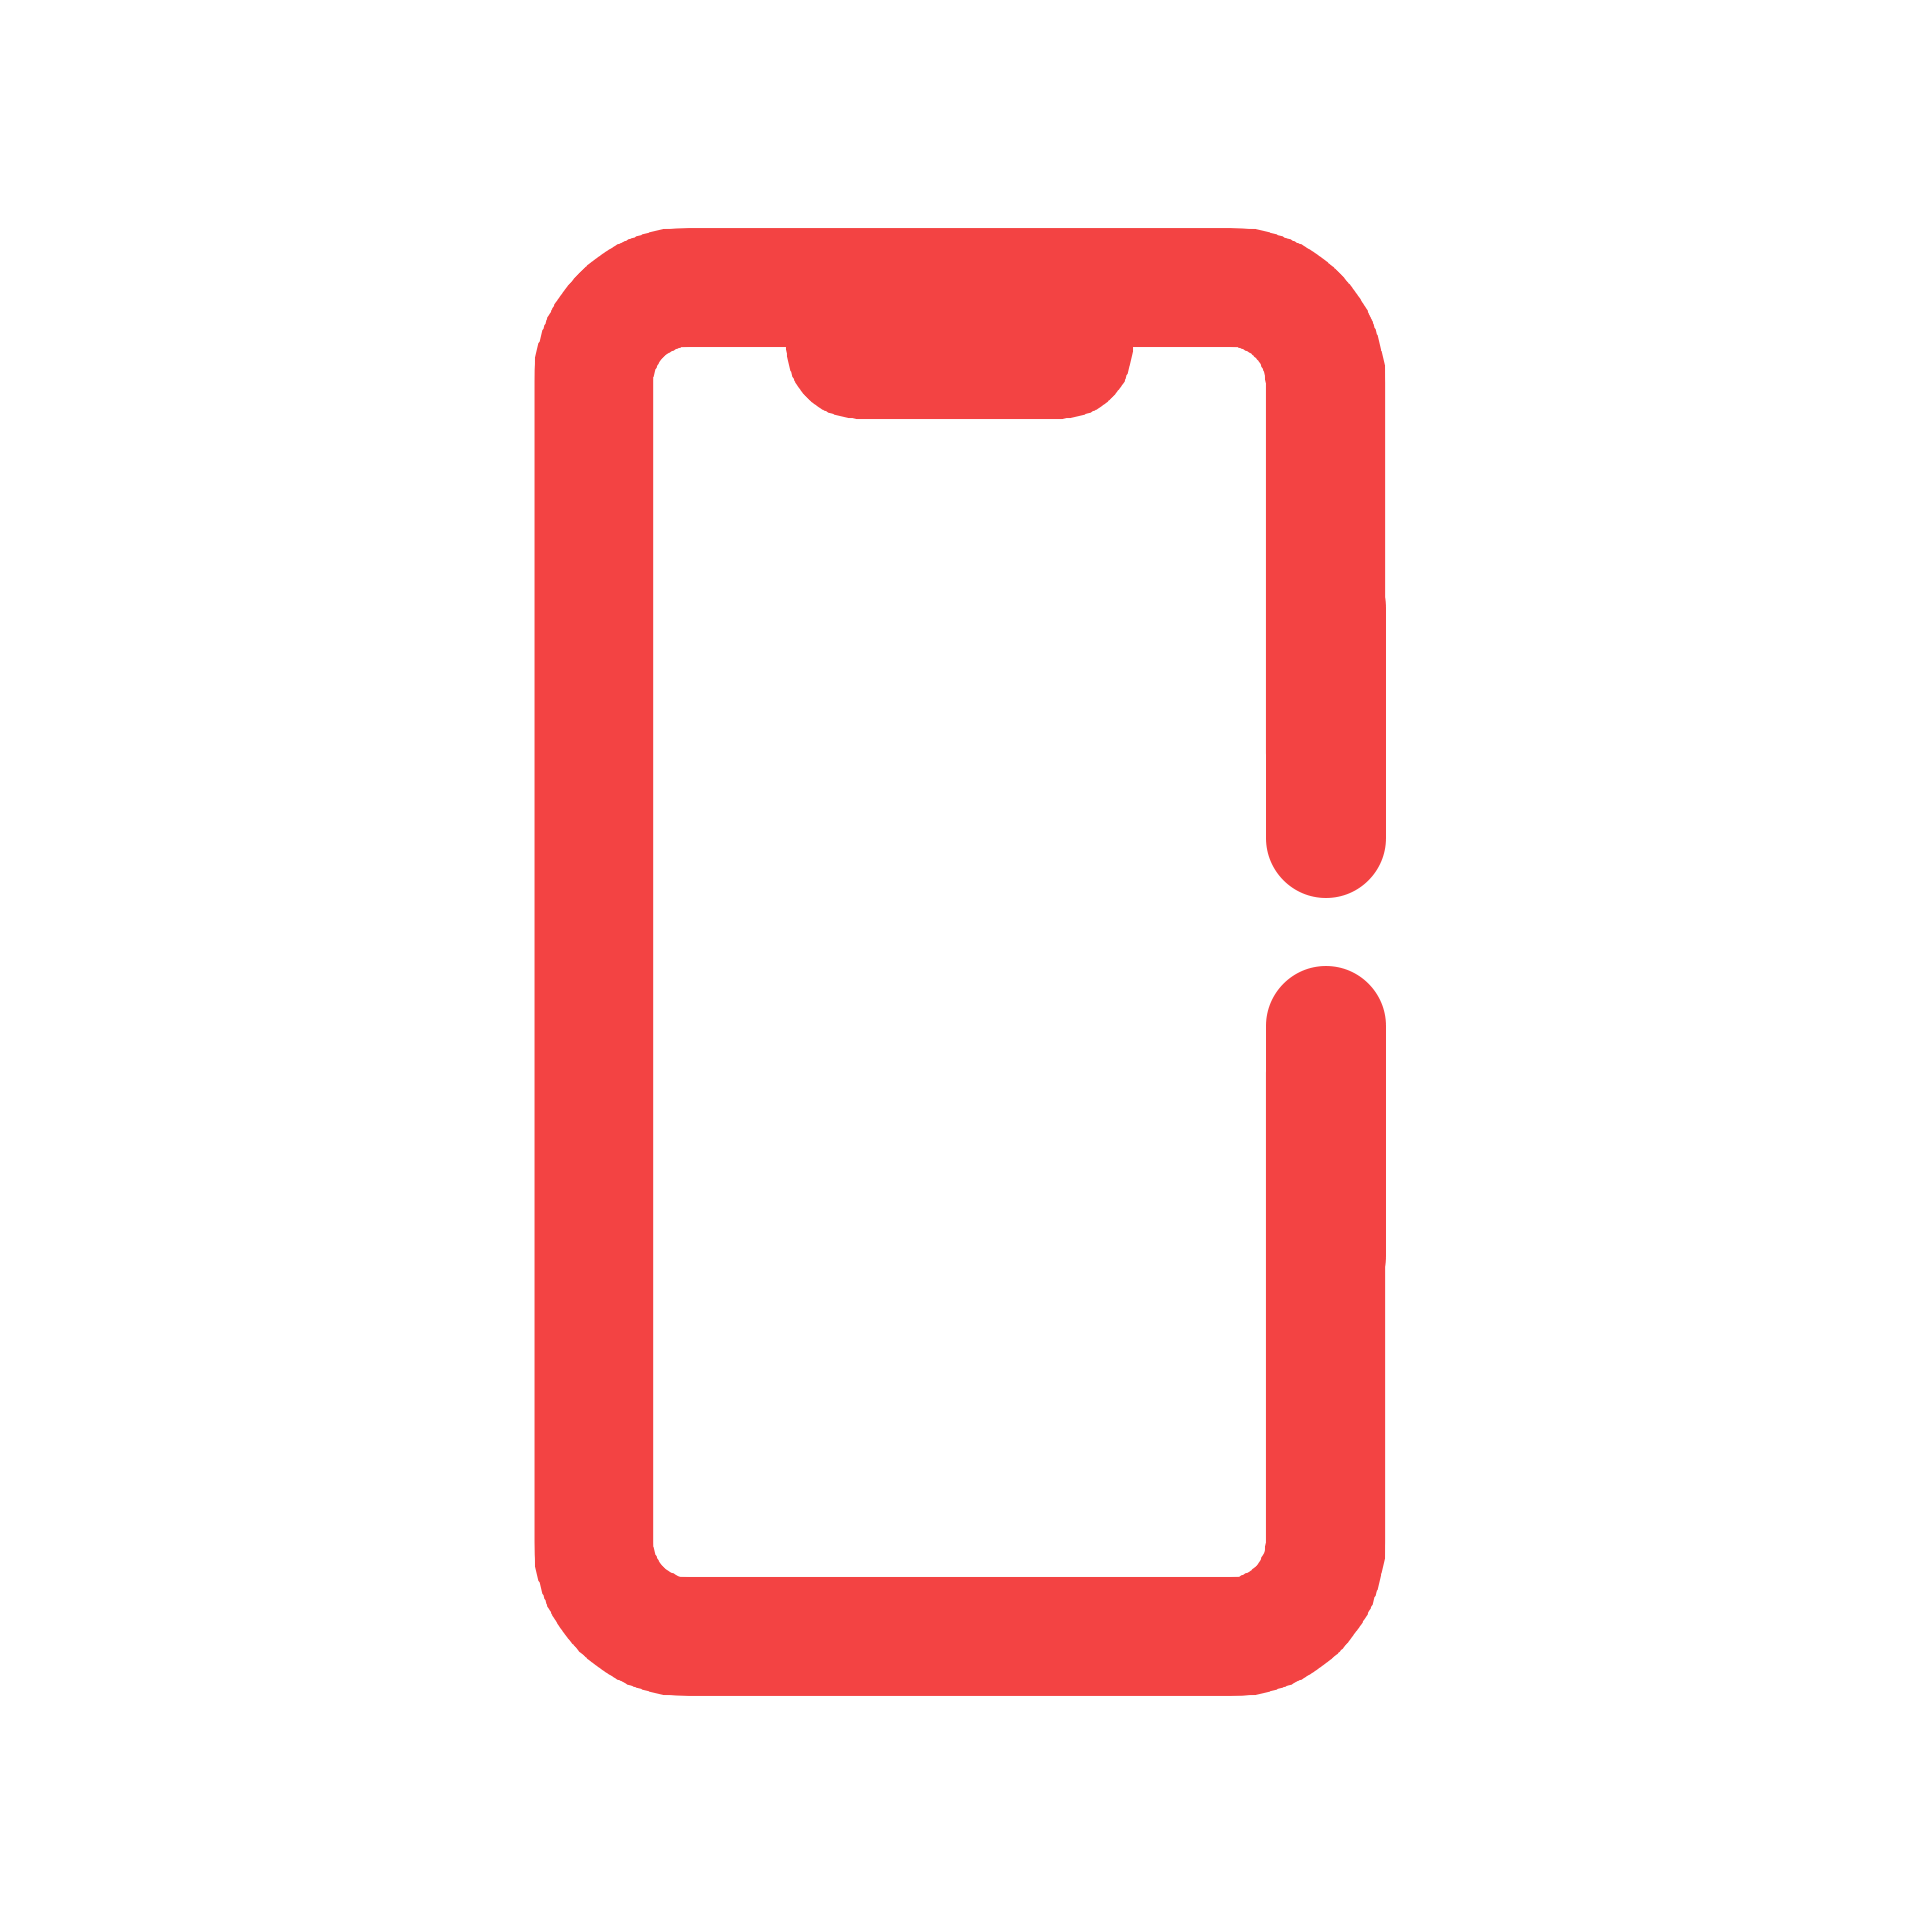 Icons eines iPhones